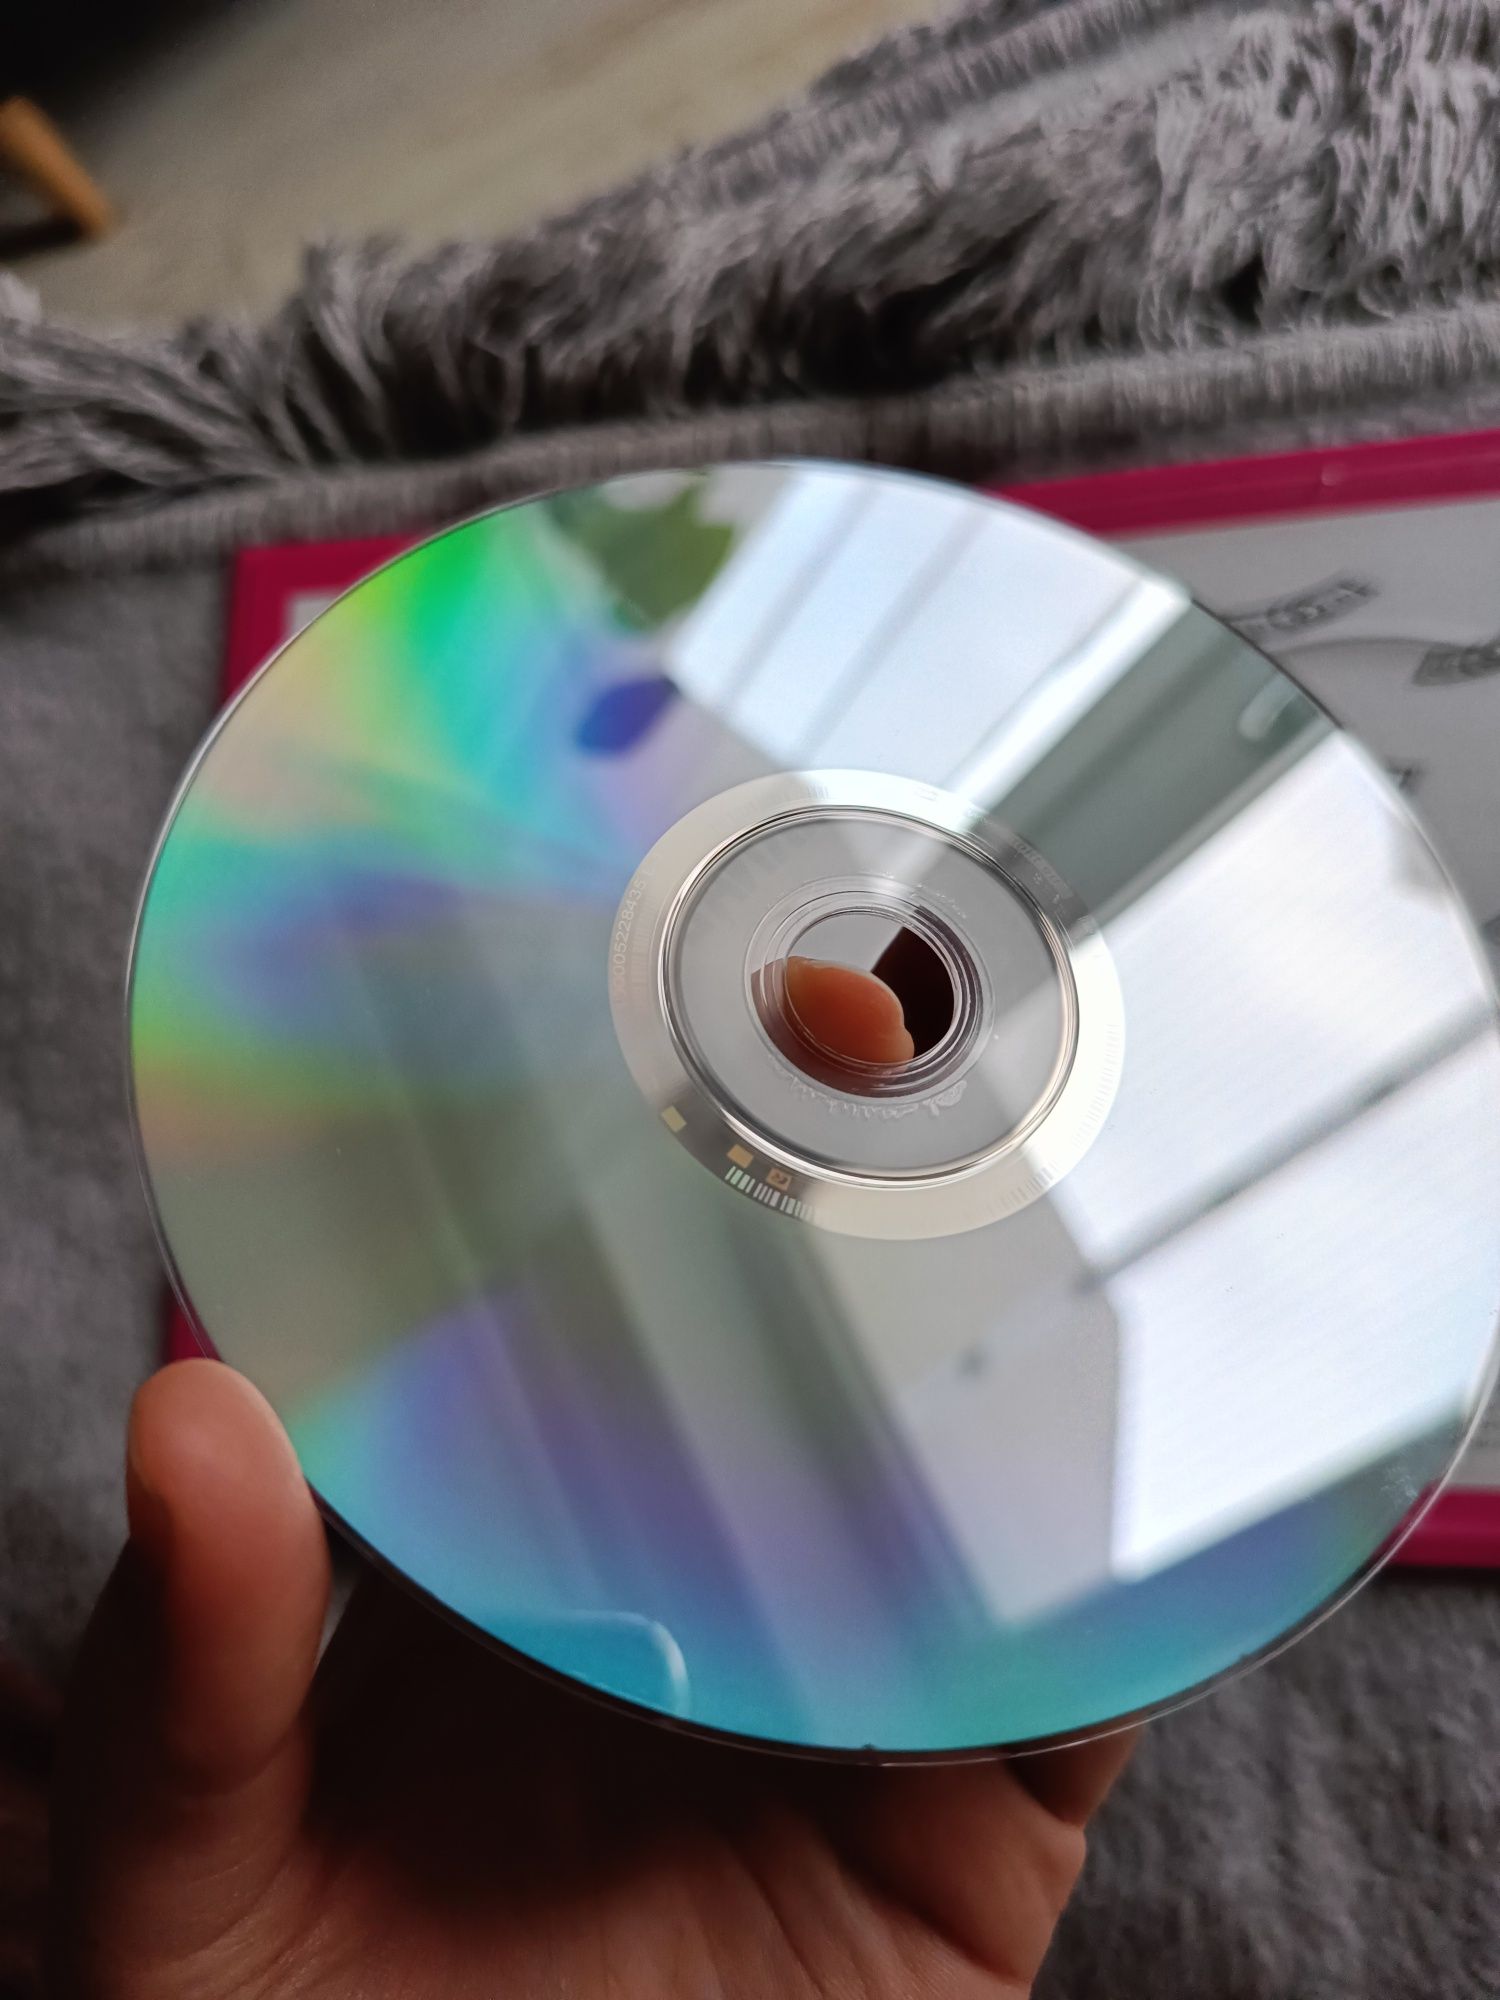 Płyta dvd z filmem Stulatek, który wyskoczył przez okno i zniknął